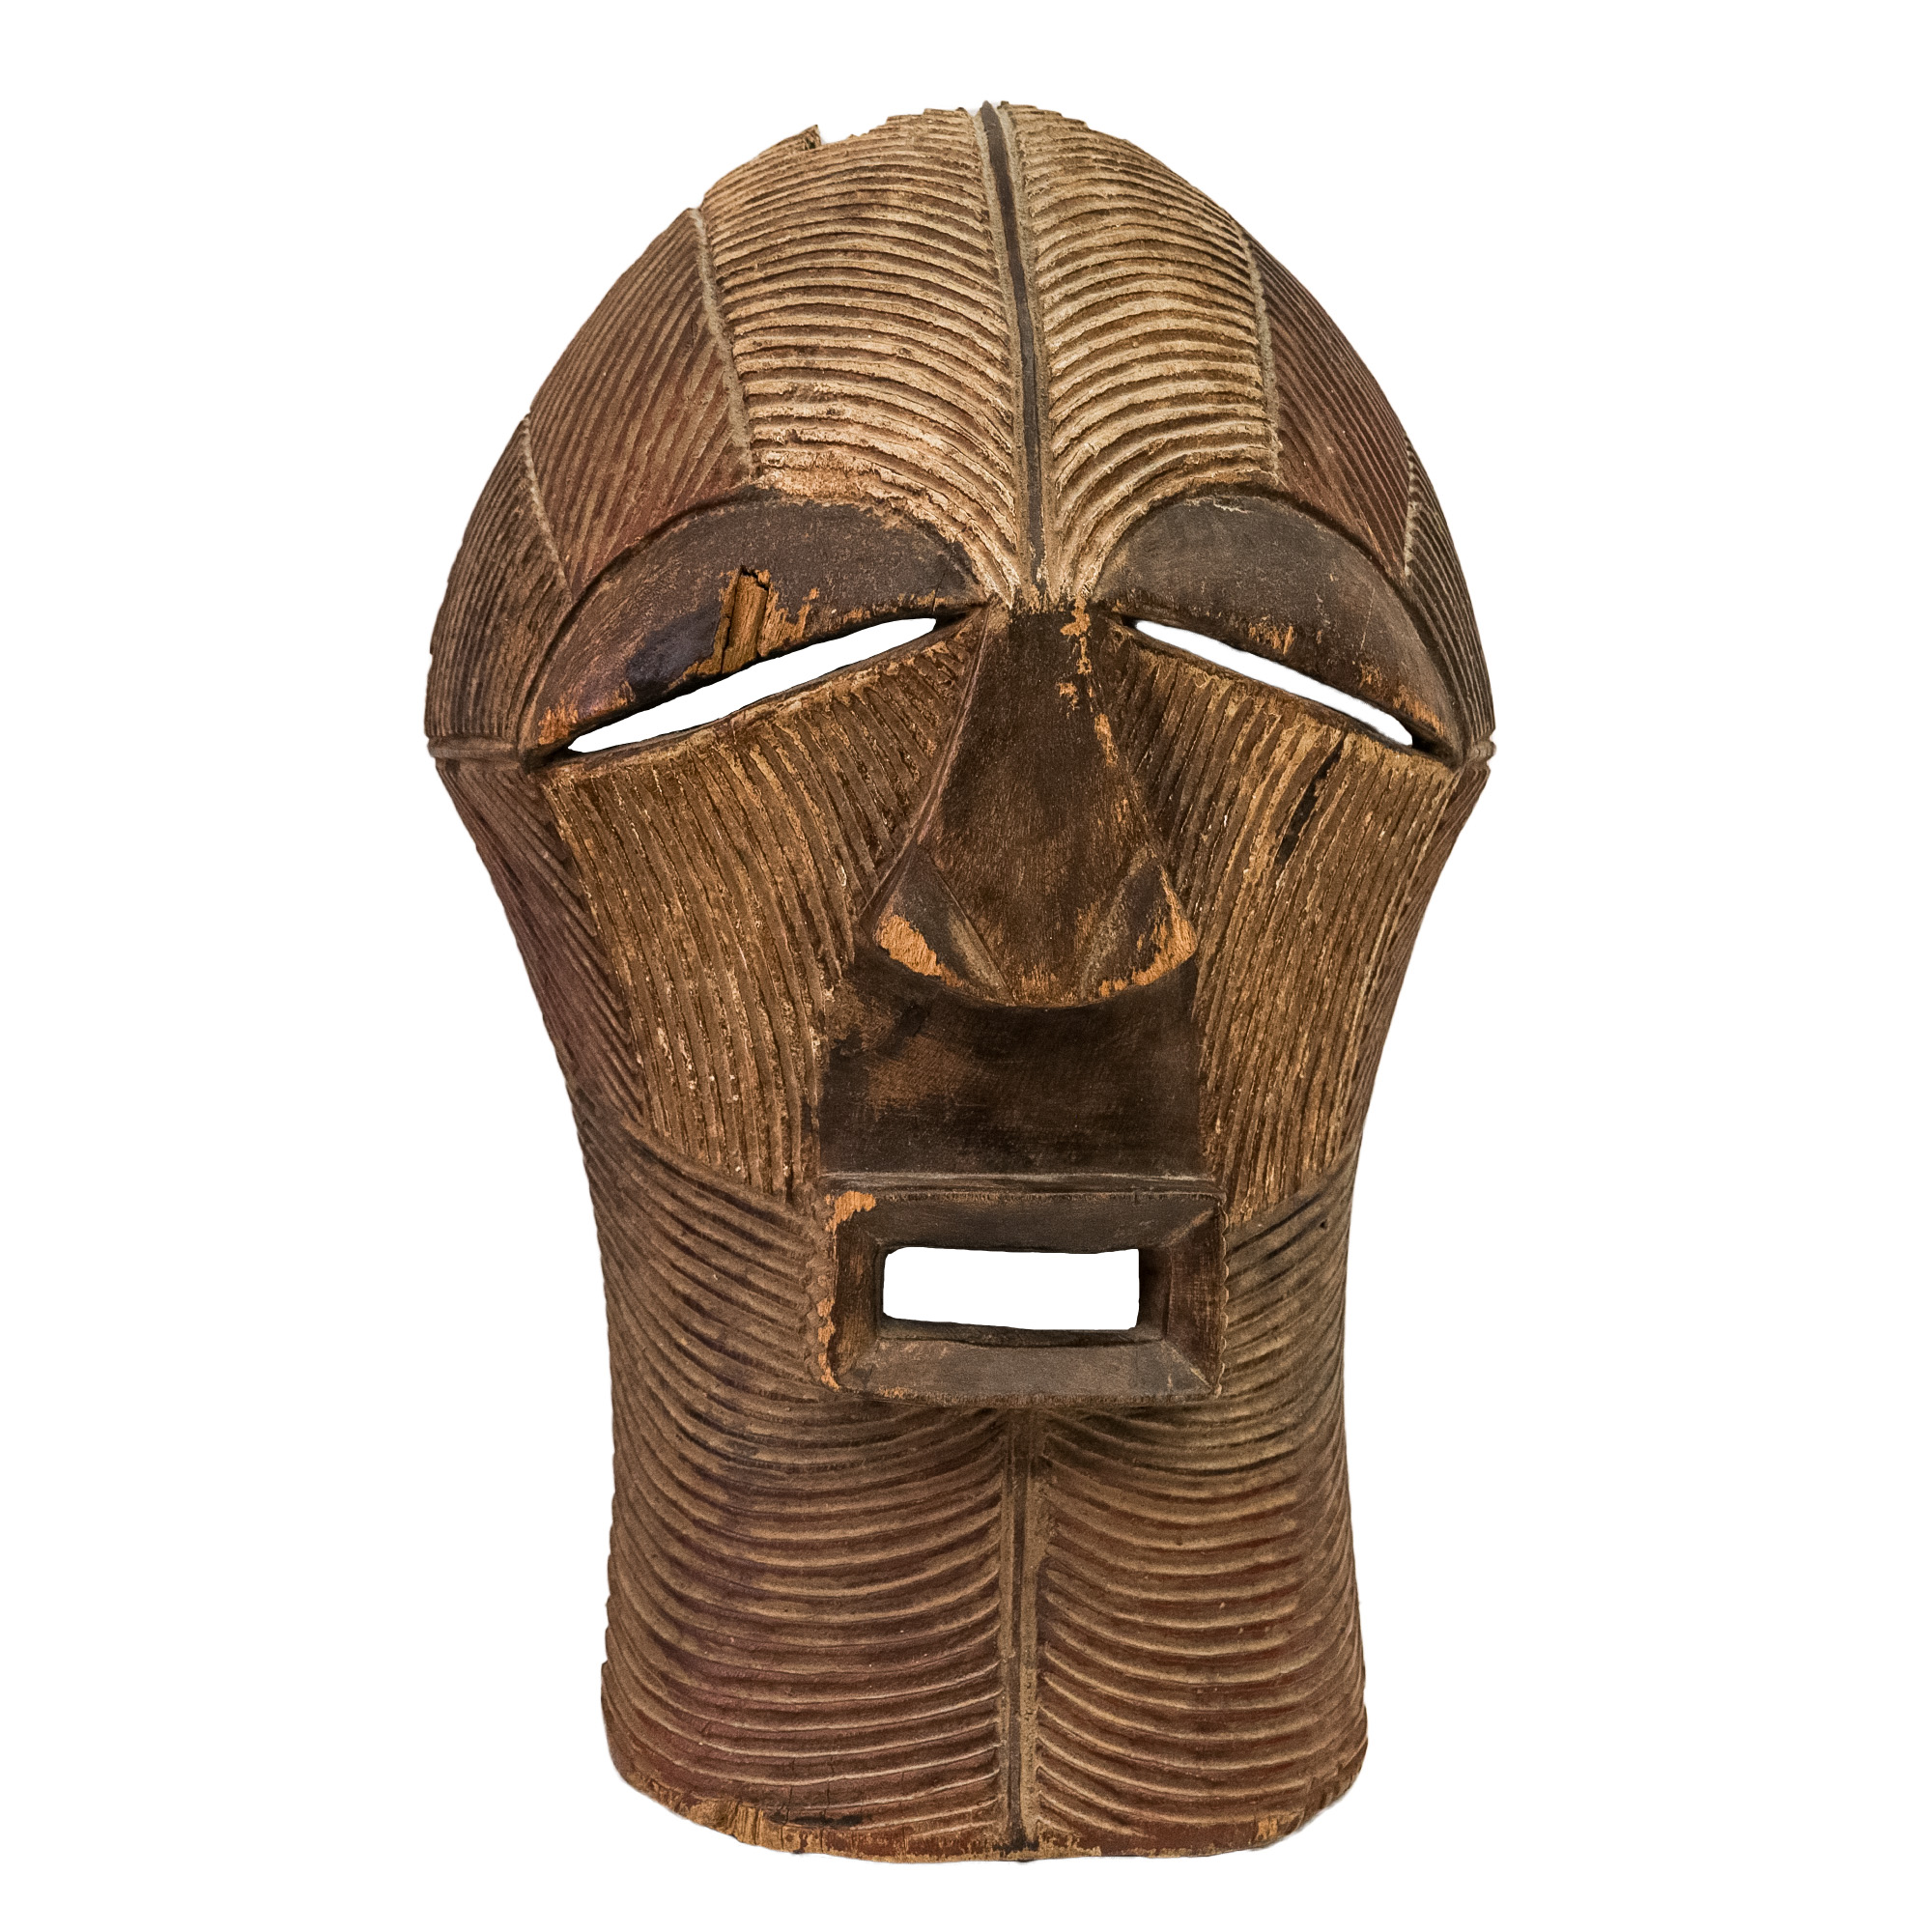 Máscara Kifwebe, Songye, R.D. Congo, Séc. XX, madeira, pigmentos, 34x62x36cm – Ref CCT15-000